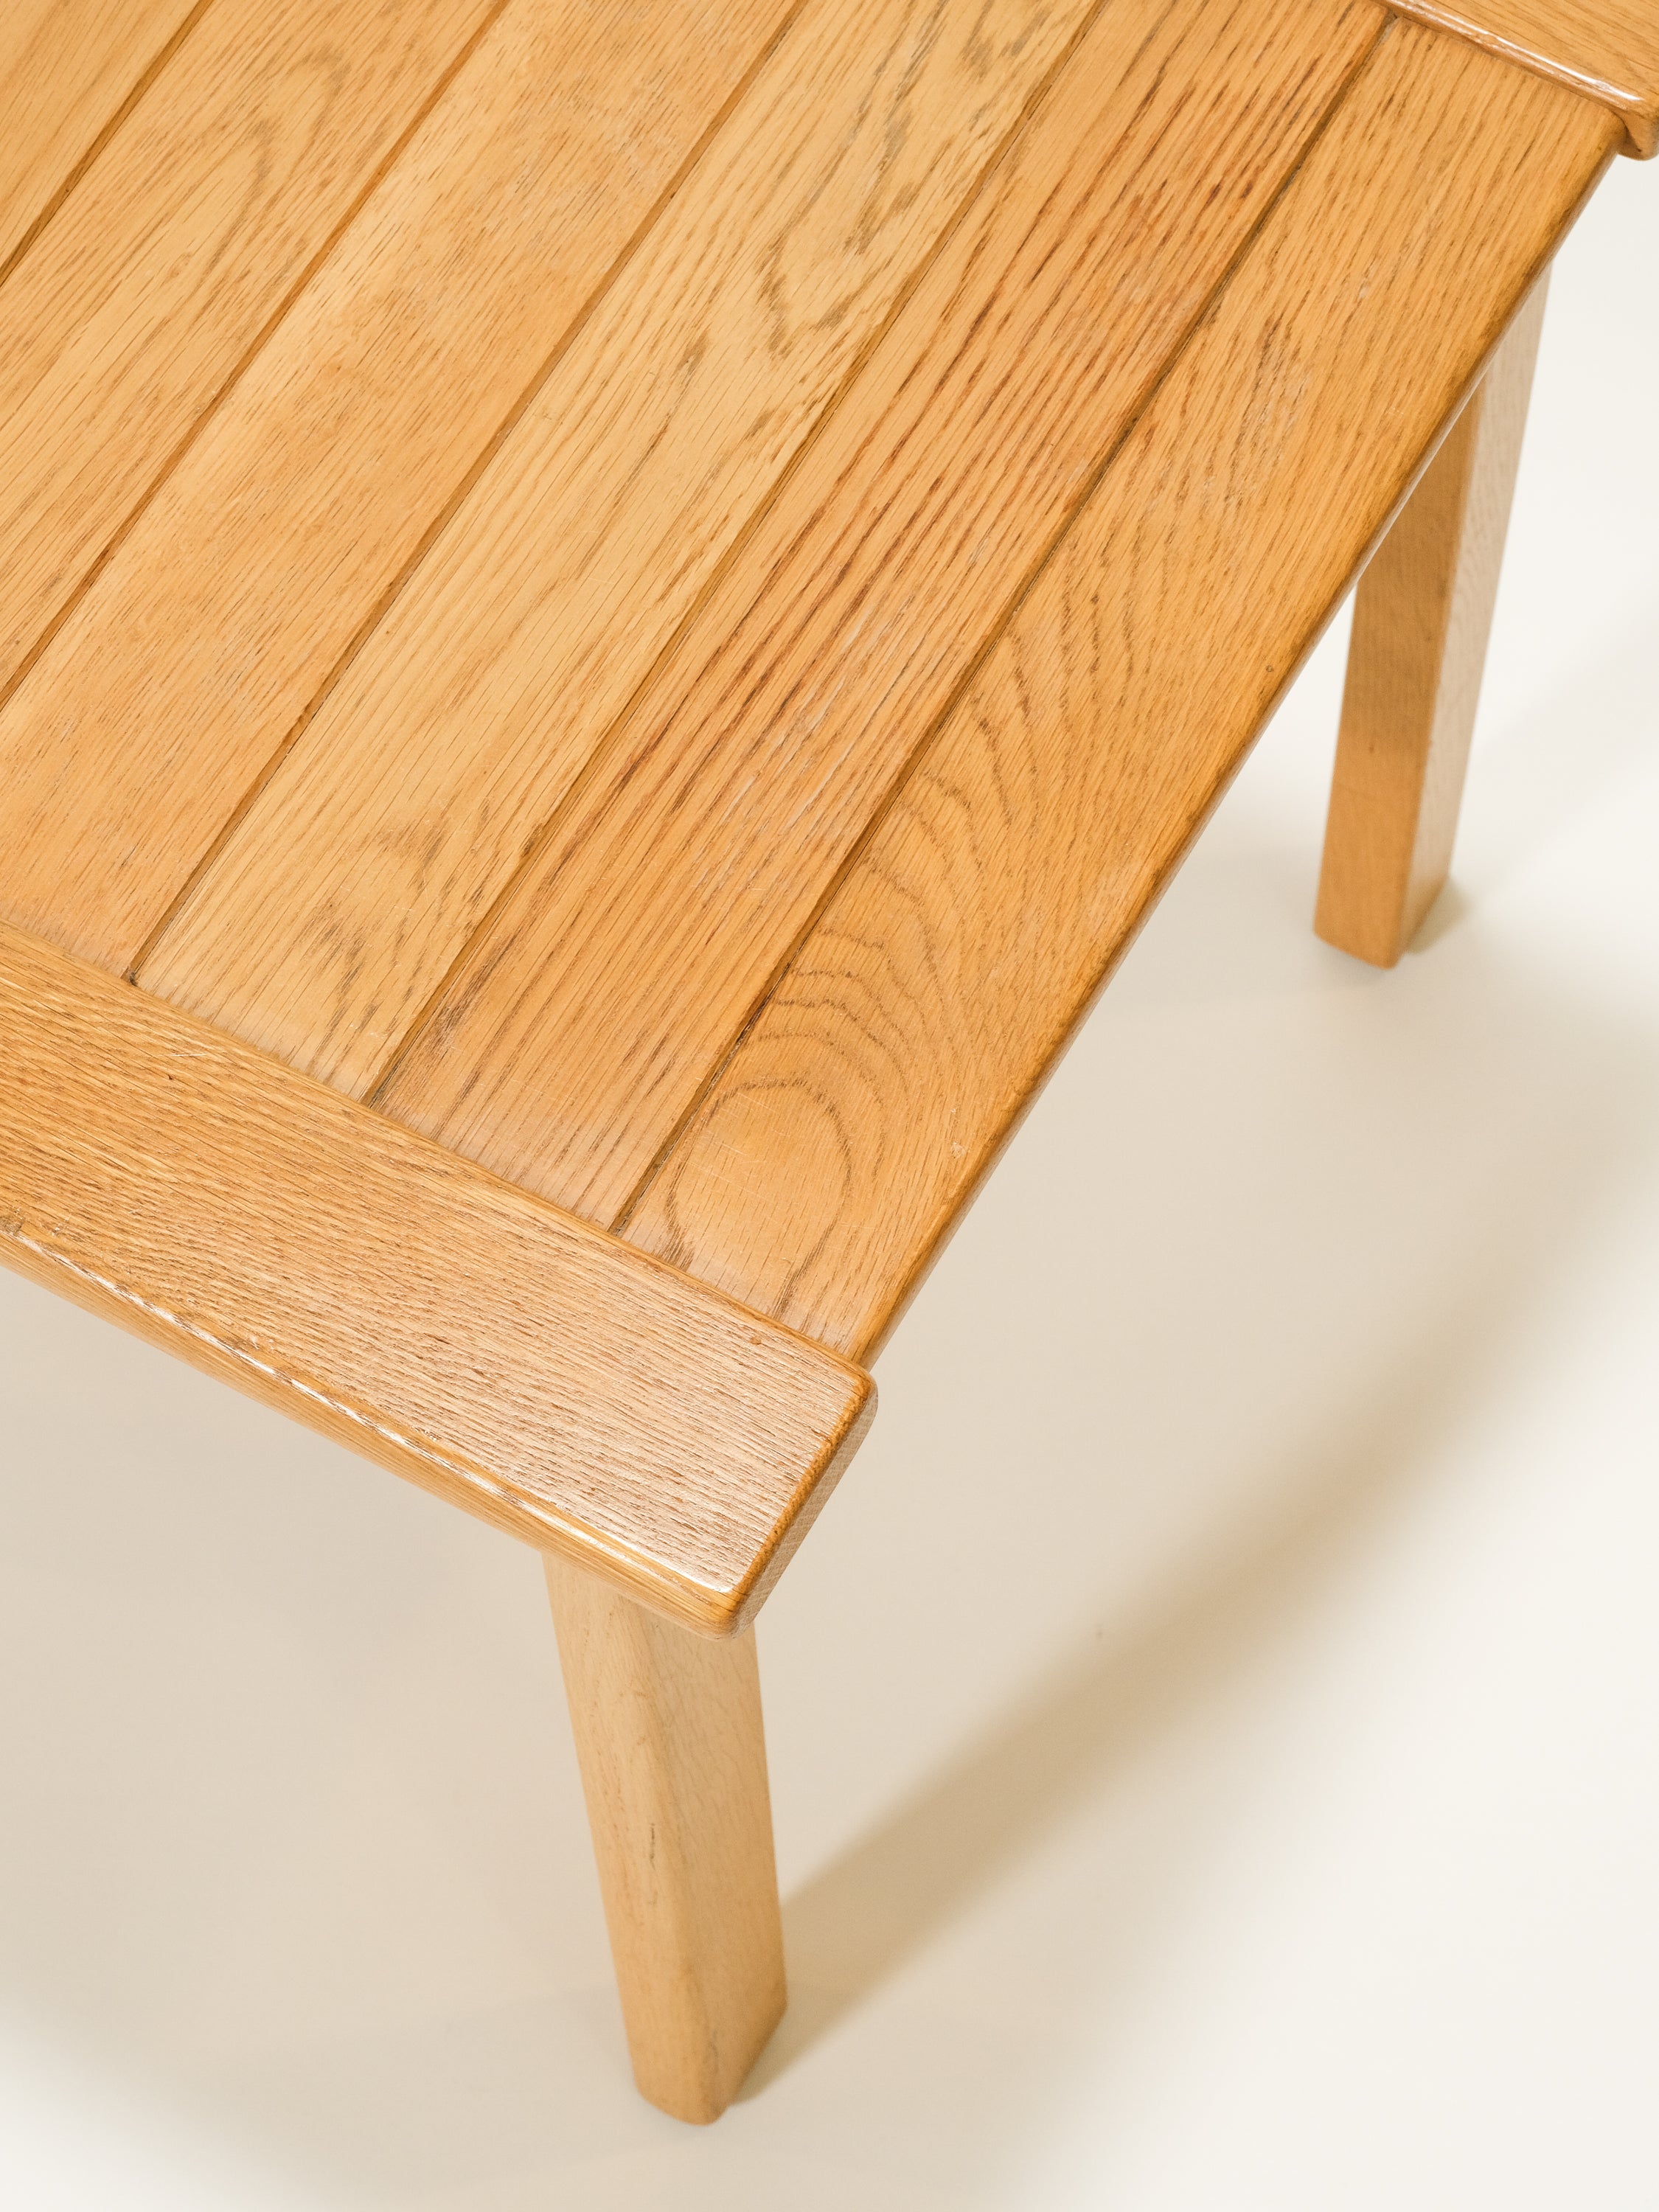 Oak Side Table / Bench by Ingvar Andersson for Averskogs Möbelfabrik, Lammhult, 1960s